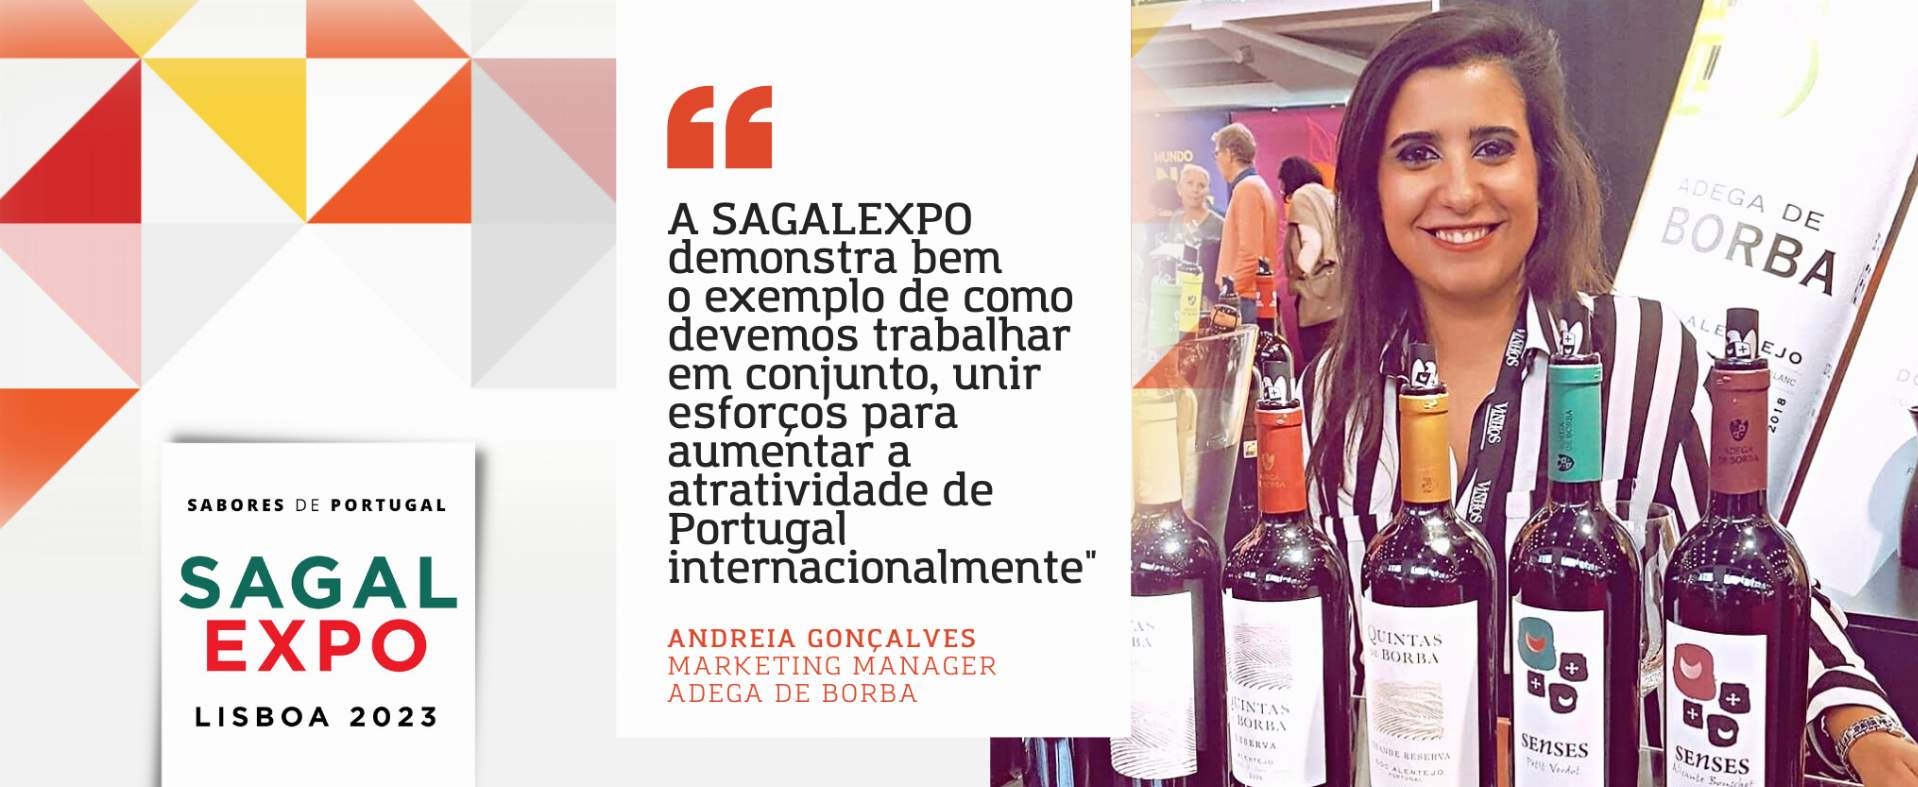 Adega de Borba: “A SAGALEXPO demonstra bem o exemplo de como devemos trabalhar em conjunto, unir esforços para aumentar a atratividade de Portugal internacionalmente"